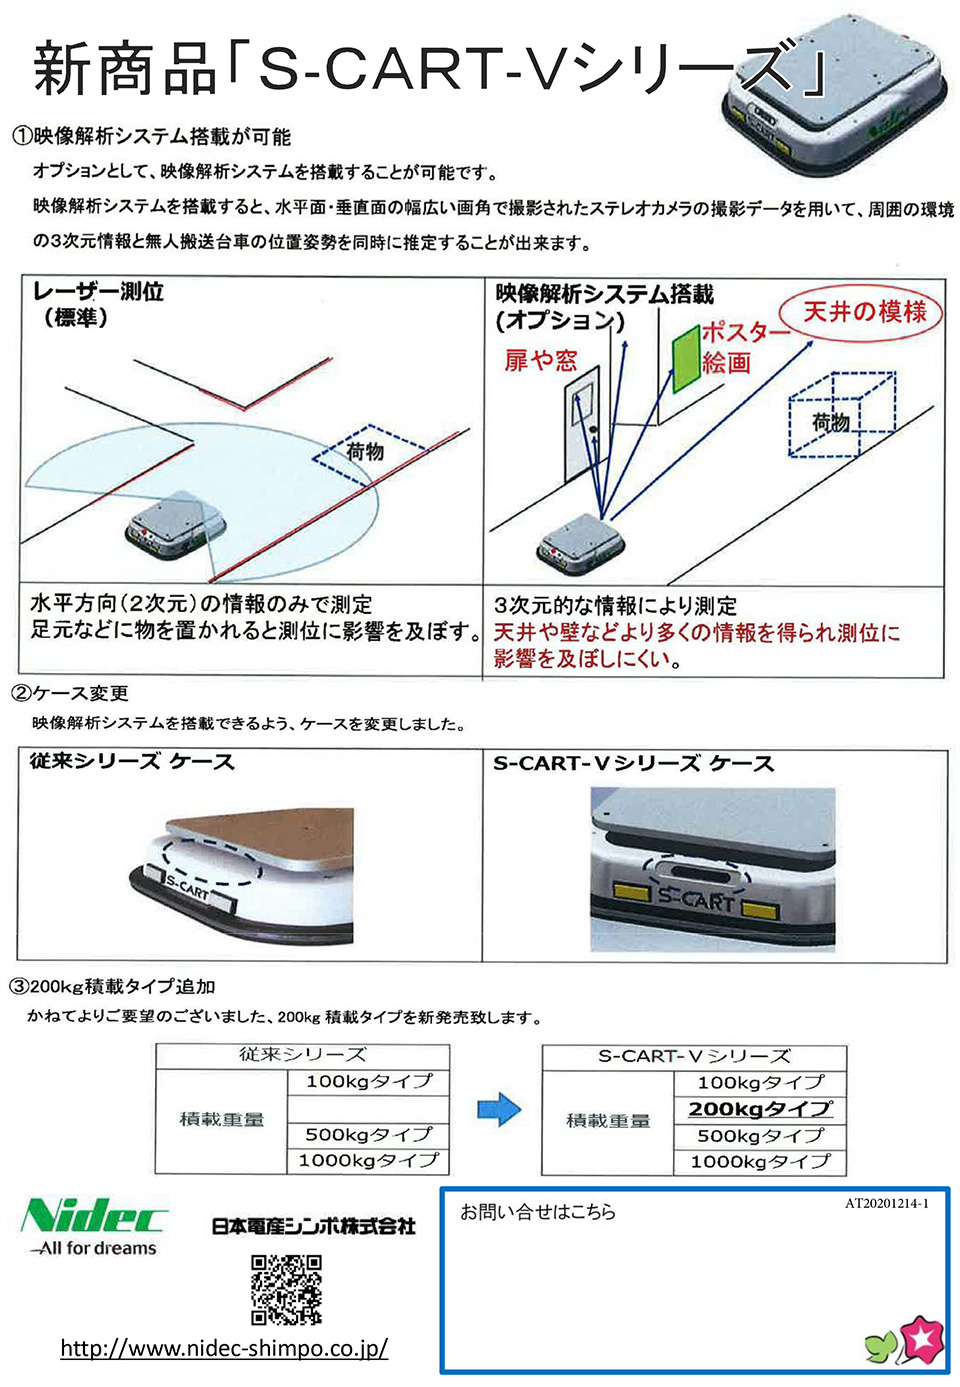 日本電産シンポ株式会社【S-CART-Vシリーズ】